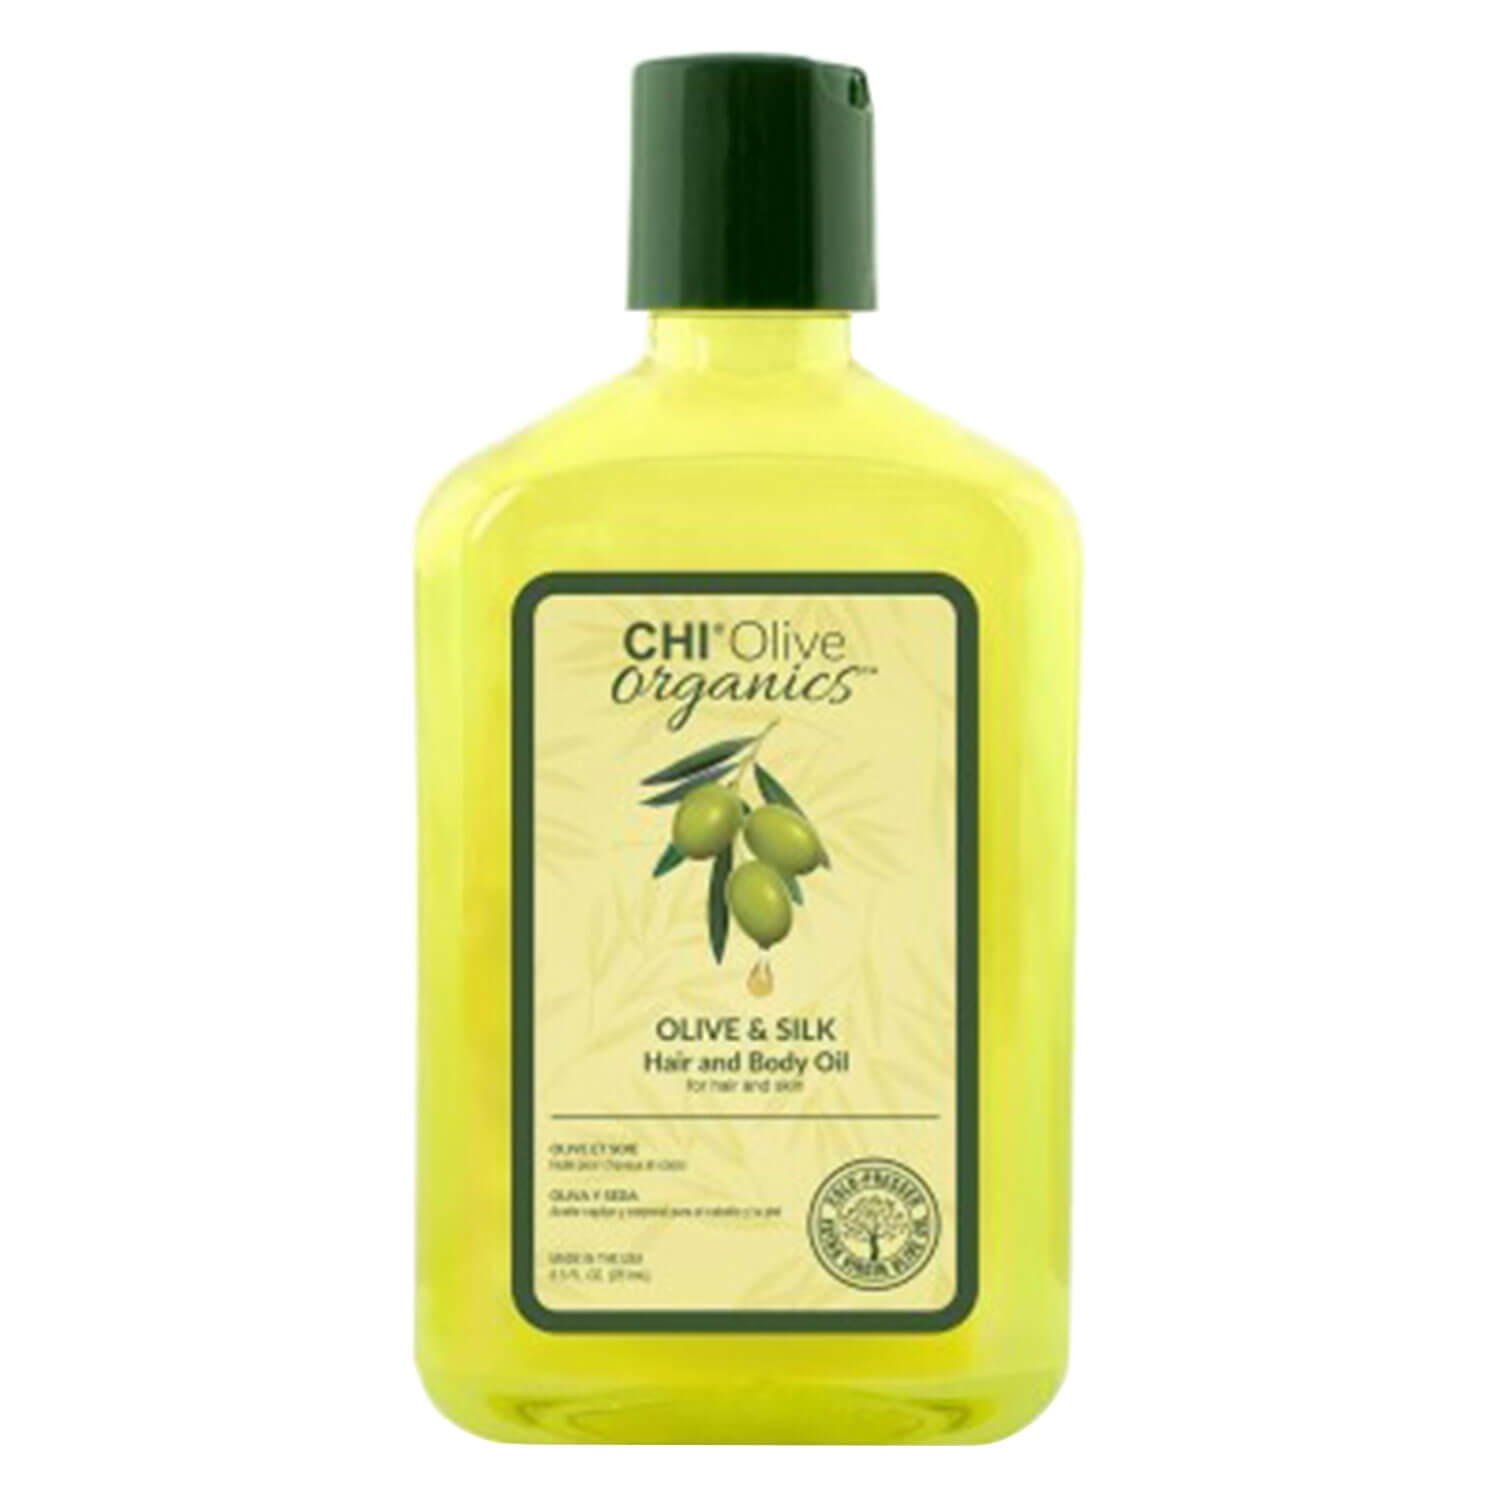 Produktbild von CHI Olive Organics - Hair & Body Oil